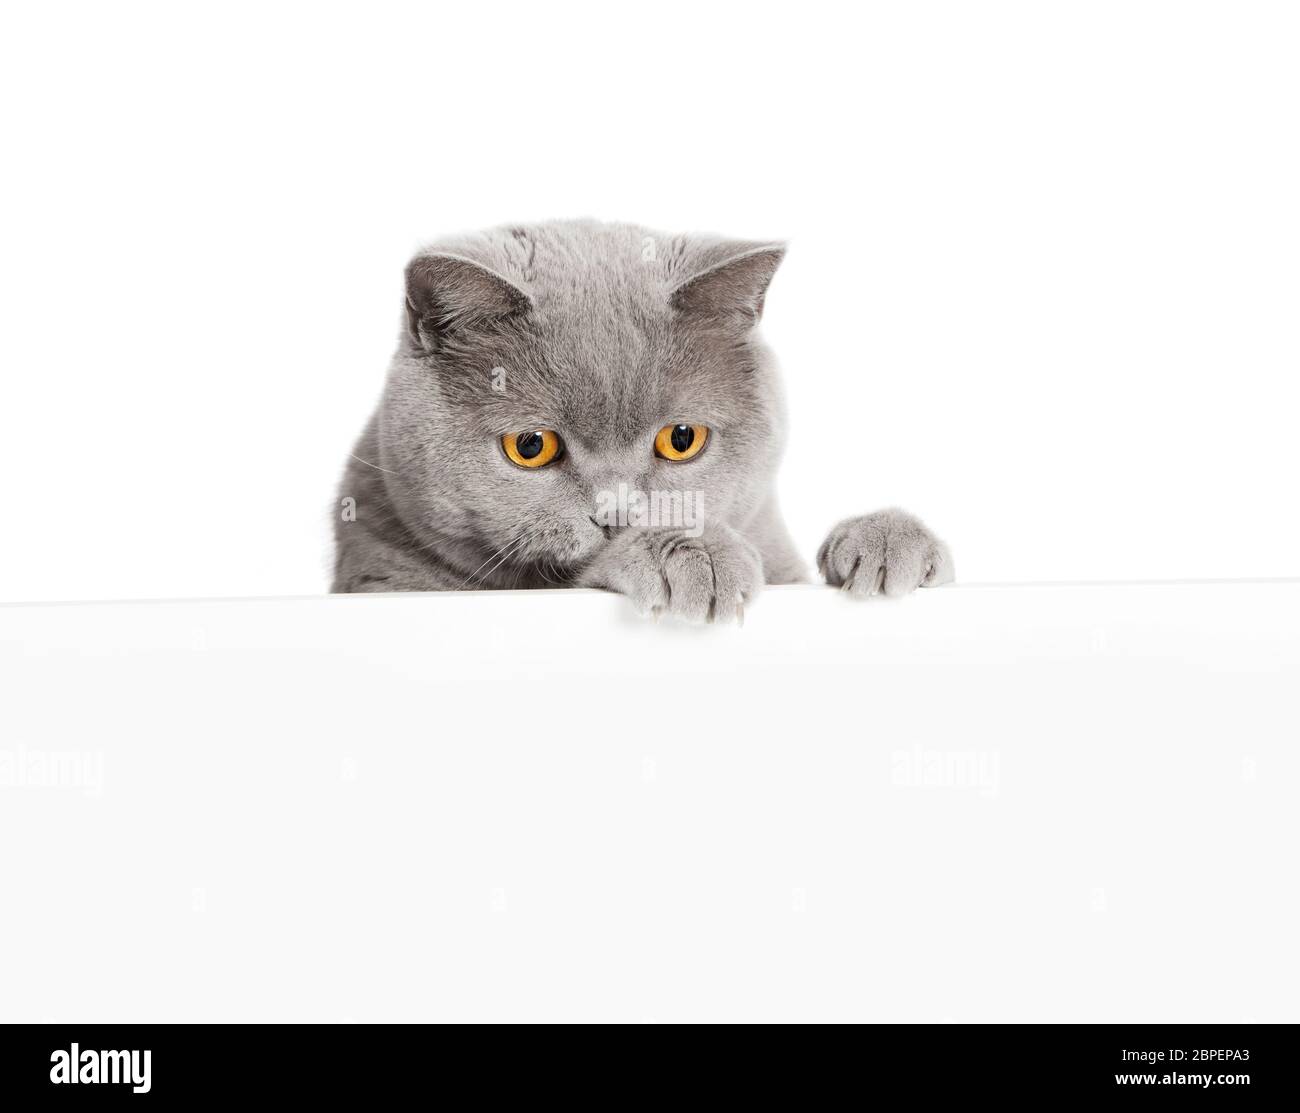 Eine Katze schaut graue britisch Kurzhaar über einen weissen Vordergrund  ohne texto, freigestellt Fotografía de stock - Alamy